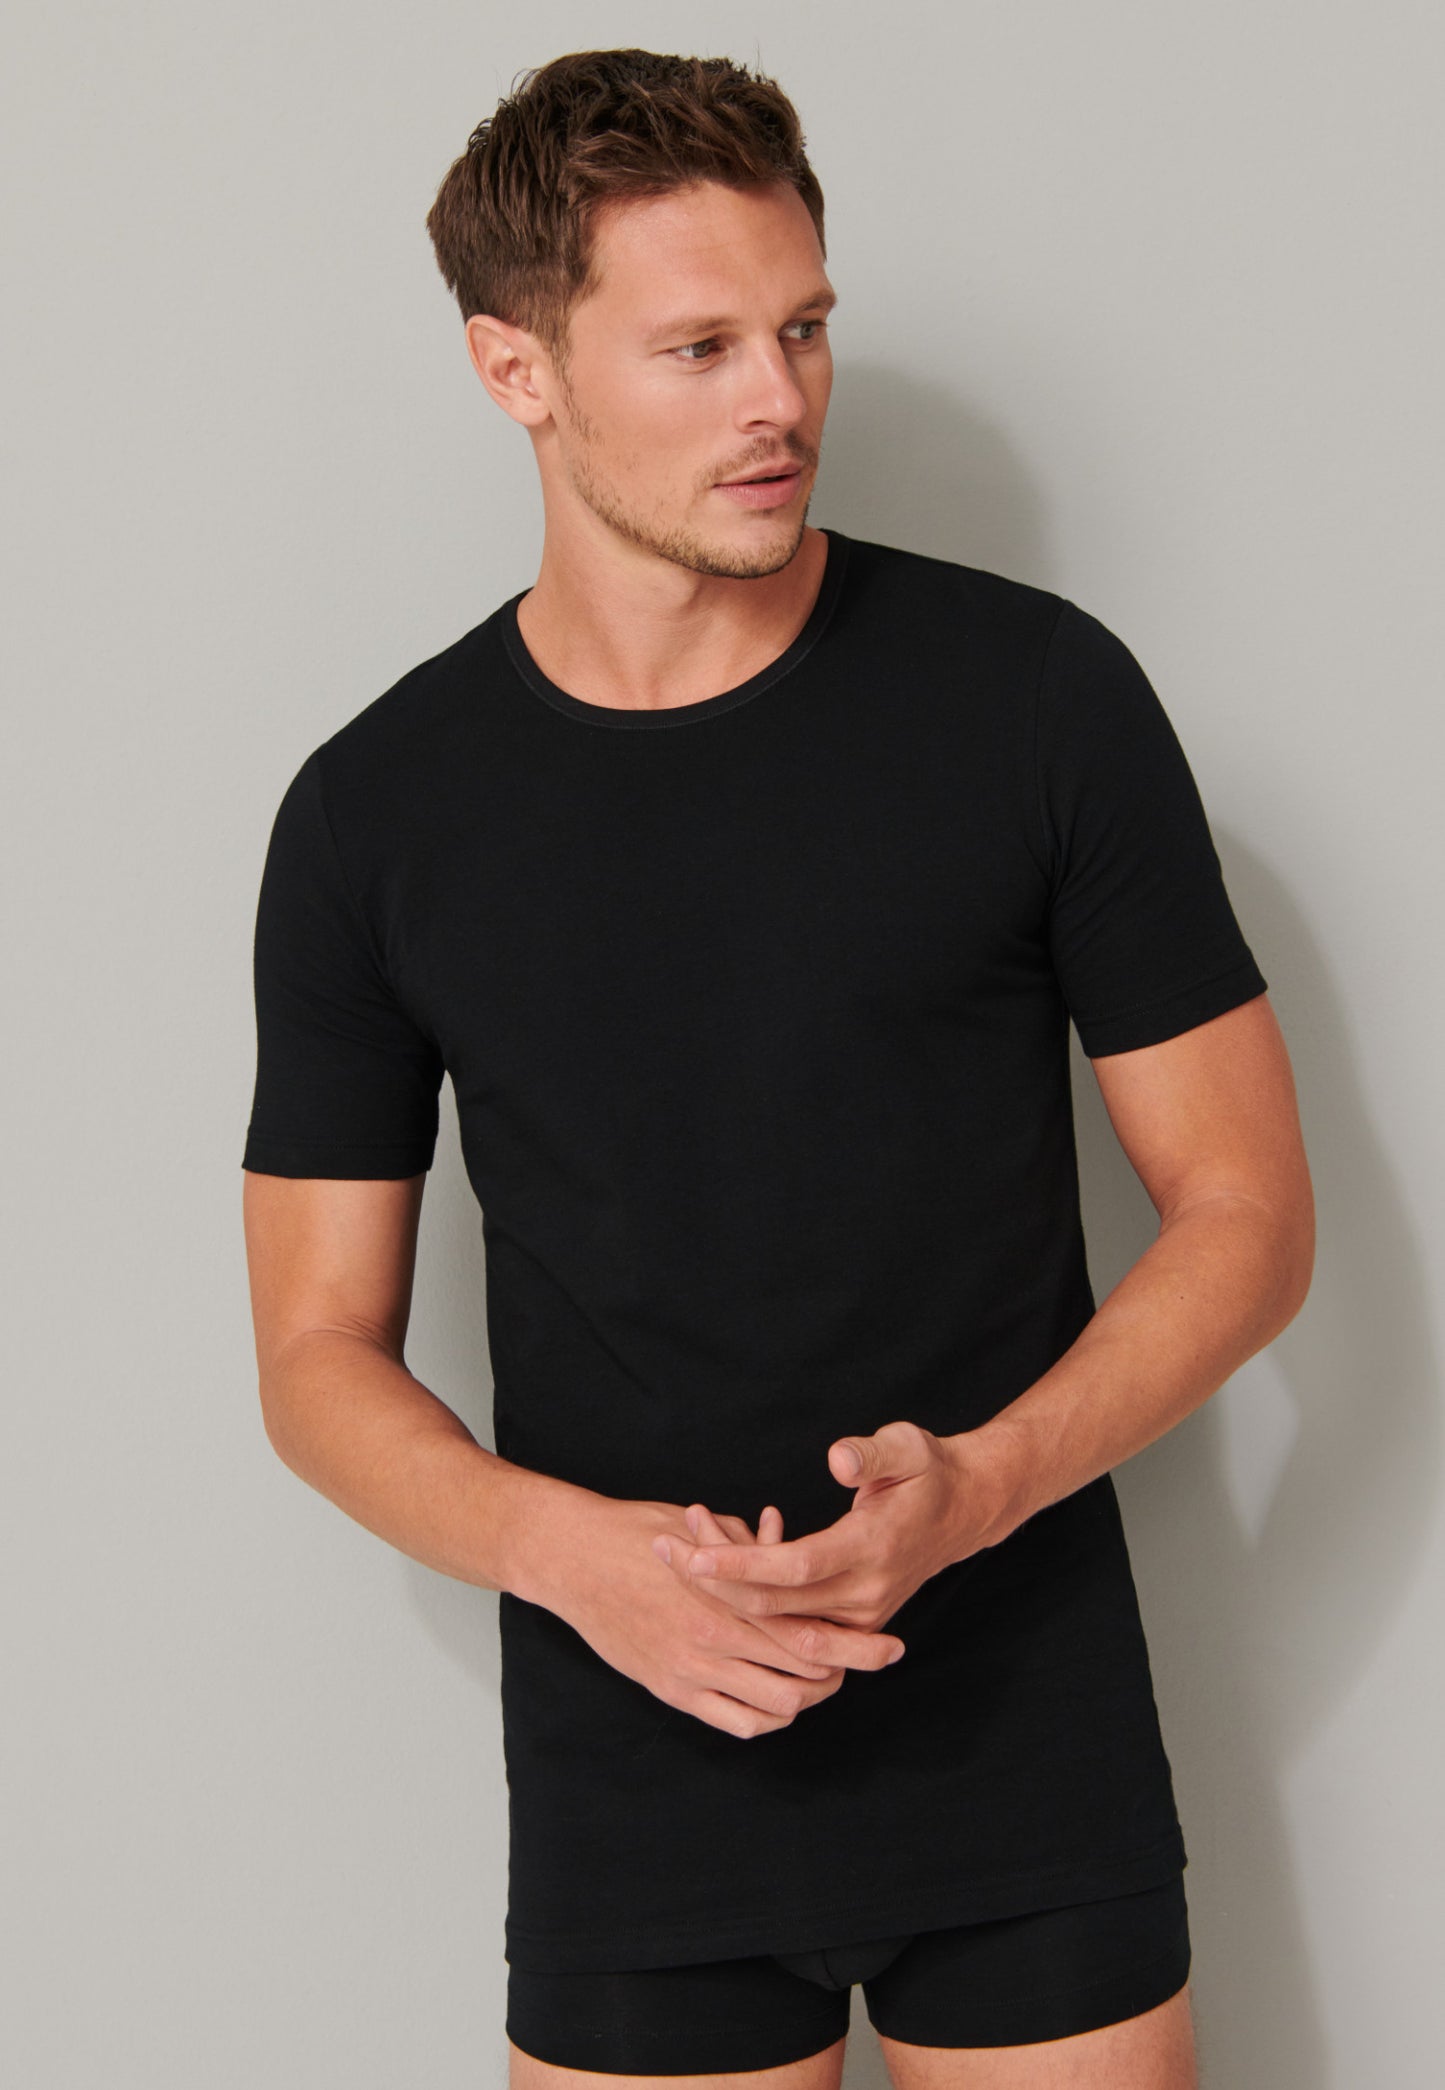 Tee-shirt manches courtes en coton bio, encolure arrondie, noir - 95/5